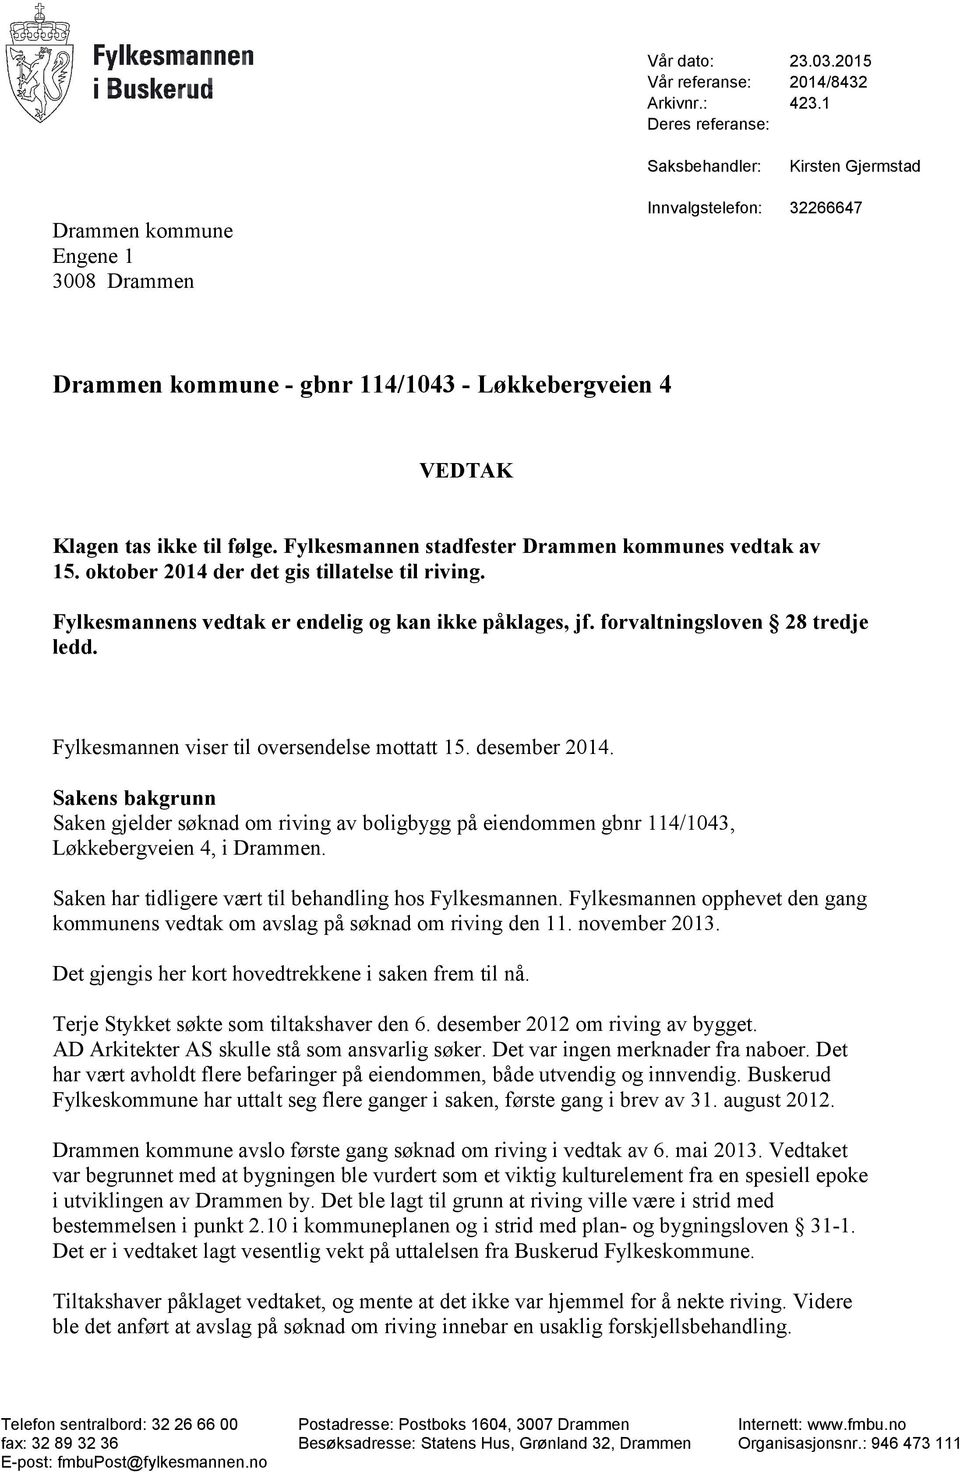 Fylkesmannen stadfester Drammen kommunes vedtak av 15. oktober 2014 der det gis tillatelse til riving. Fylkesmannens vedtak er endelig og kan ikke påklages, jf. forvaltningsloven 28 tredje ledd.